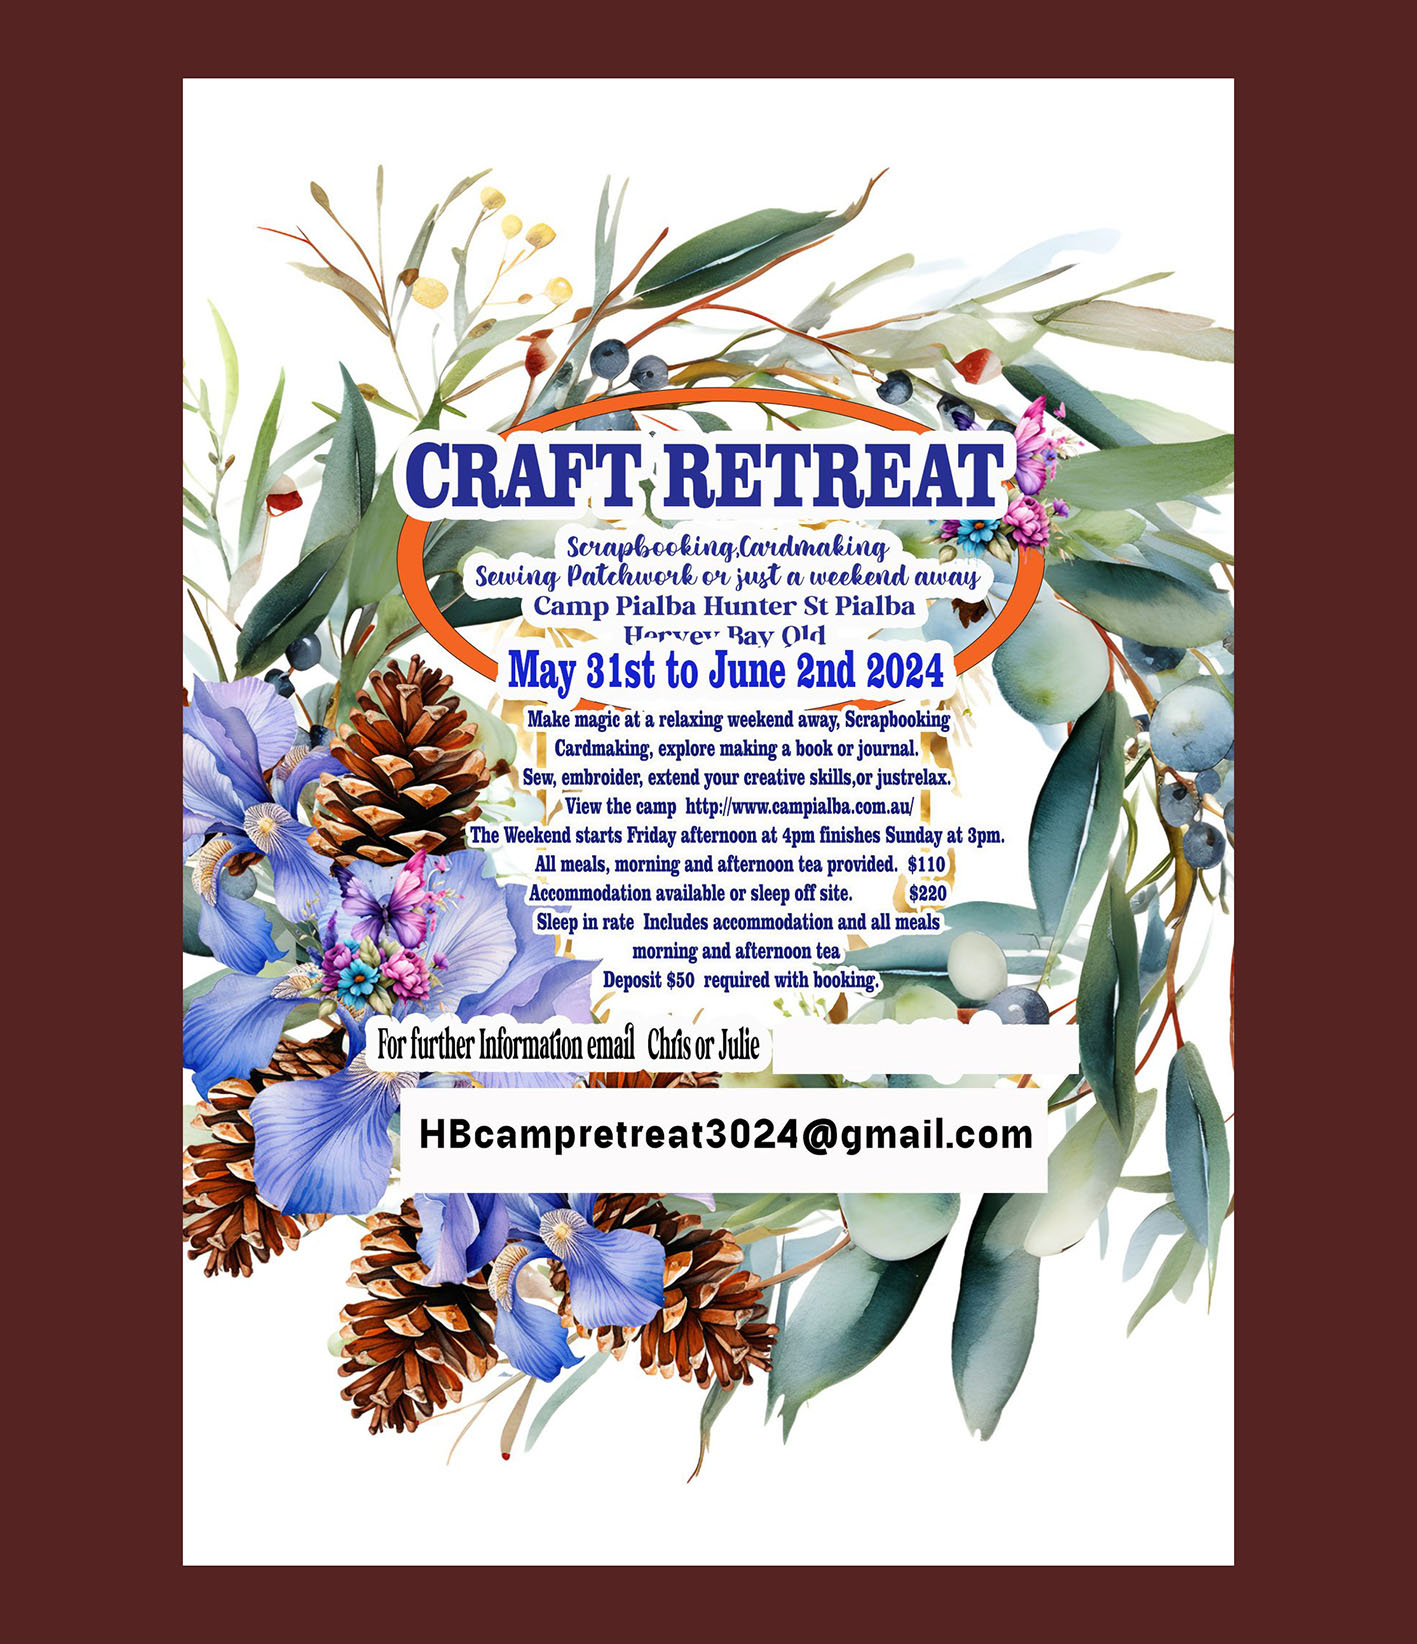 Craft retreat, May 31 2024